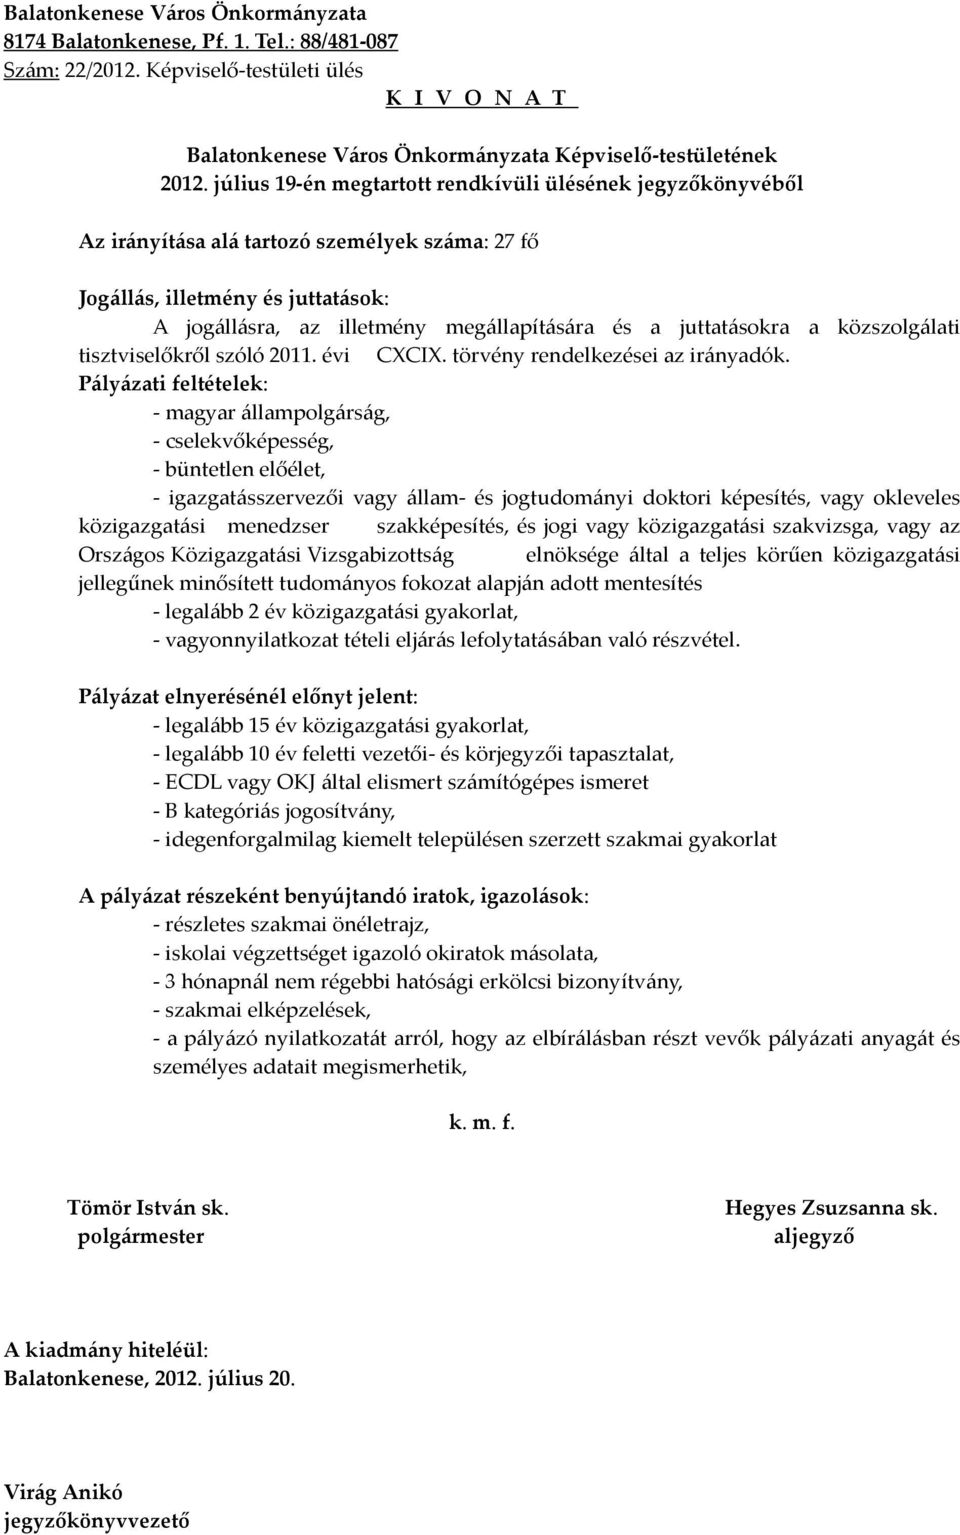 Pályázati feltételek: - magyar állampolgárság, - cselekvőképesség, - büntetlen előélet, - igazgatásszervezői vagy állam- és jogtudományi doktori képesítés, vagy okleveles közigazgatási menedzser